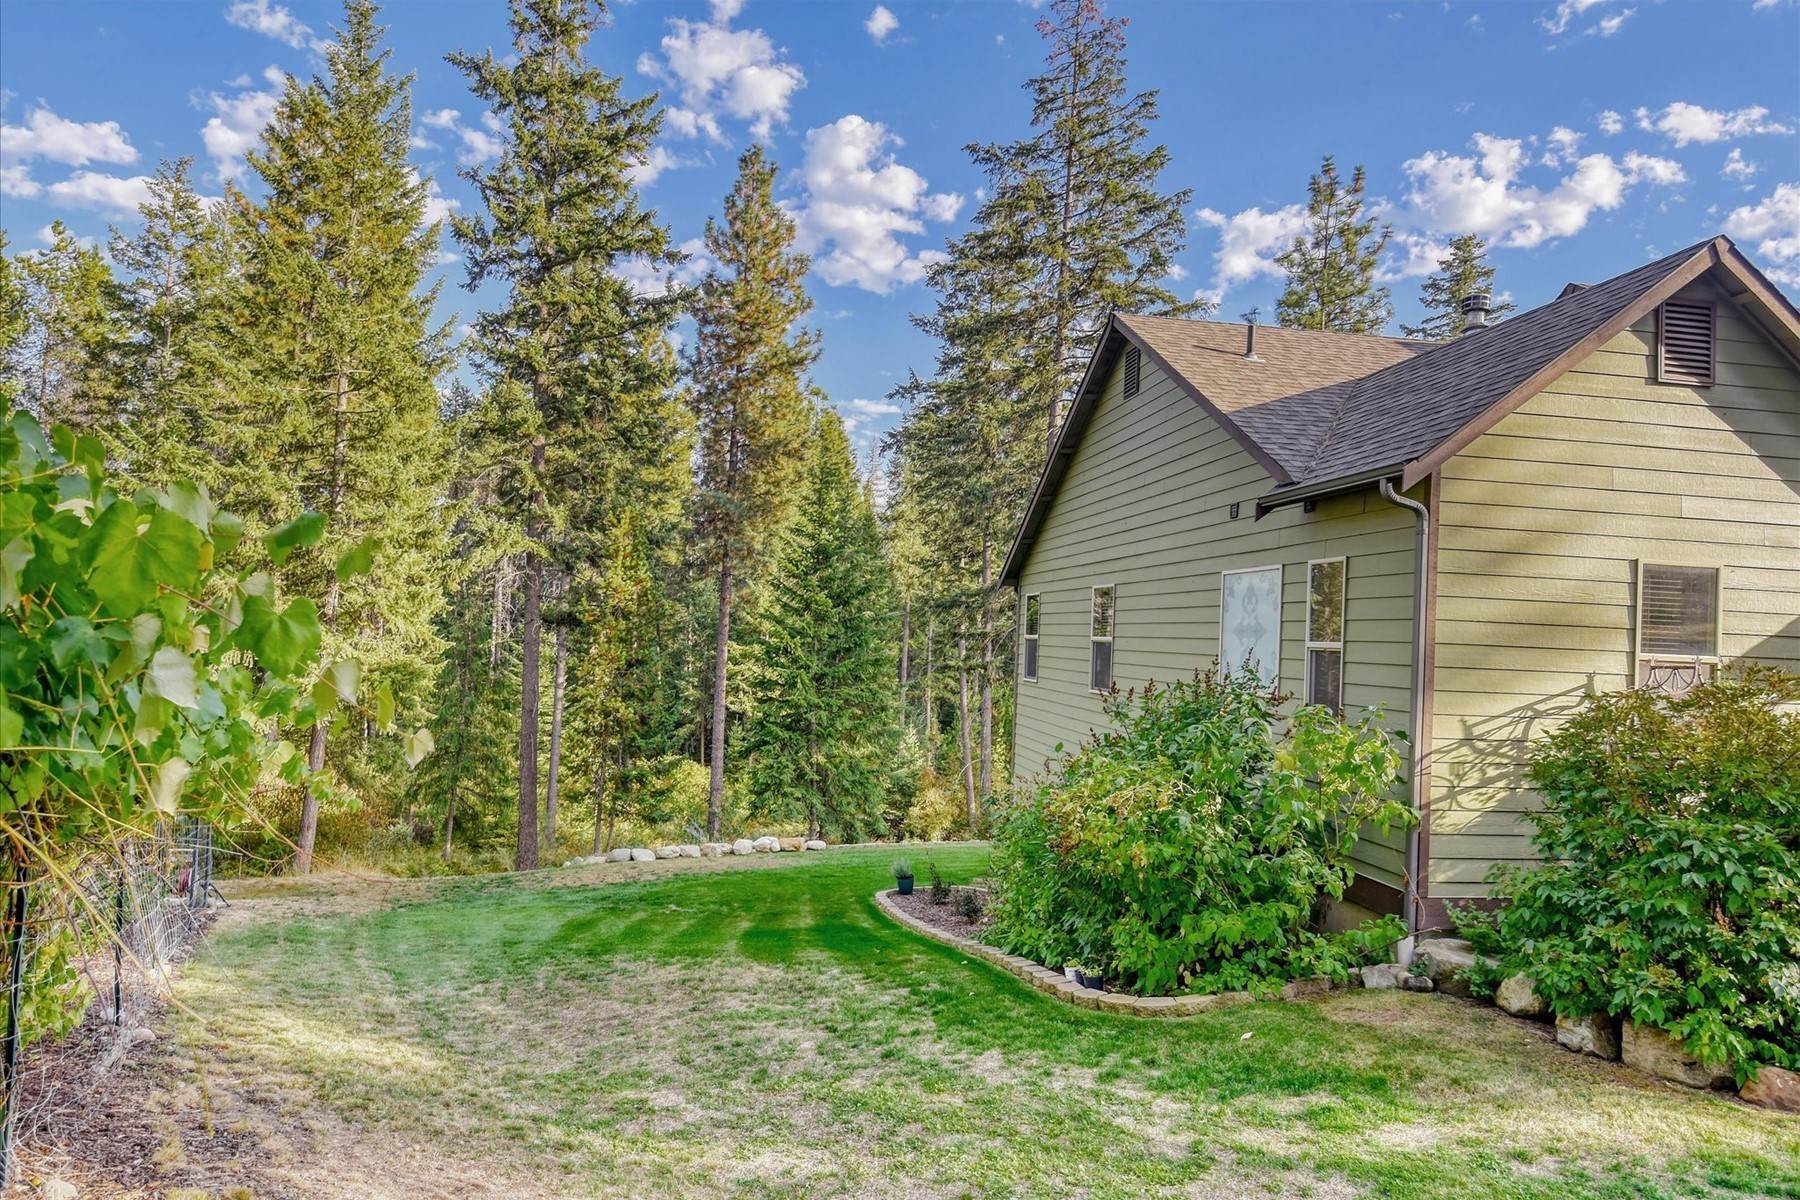 43. Single Family Homes for Sale at Gallop Circle Estate 585 Gallop Circle Sagle, Idaho 83860 United States